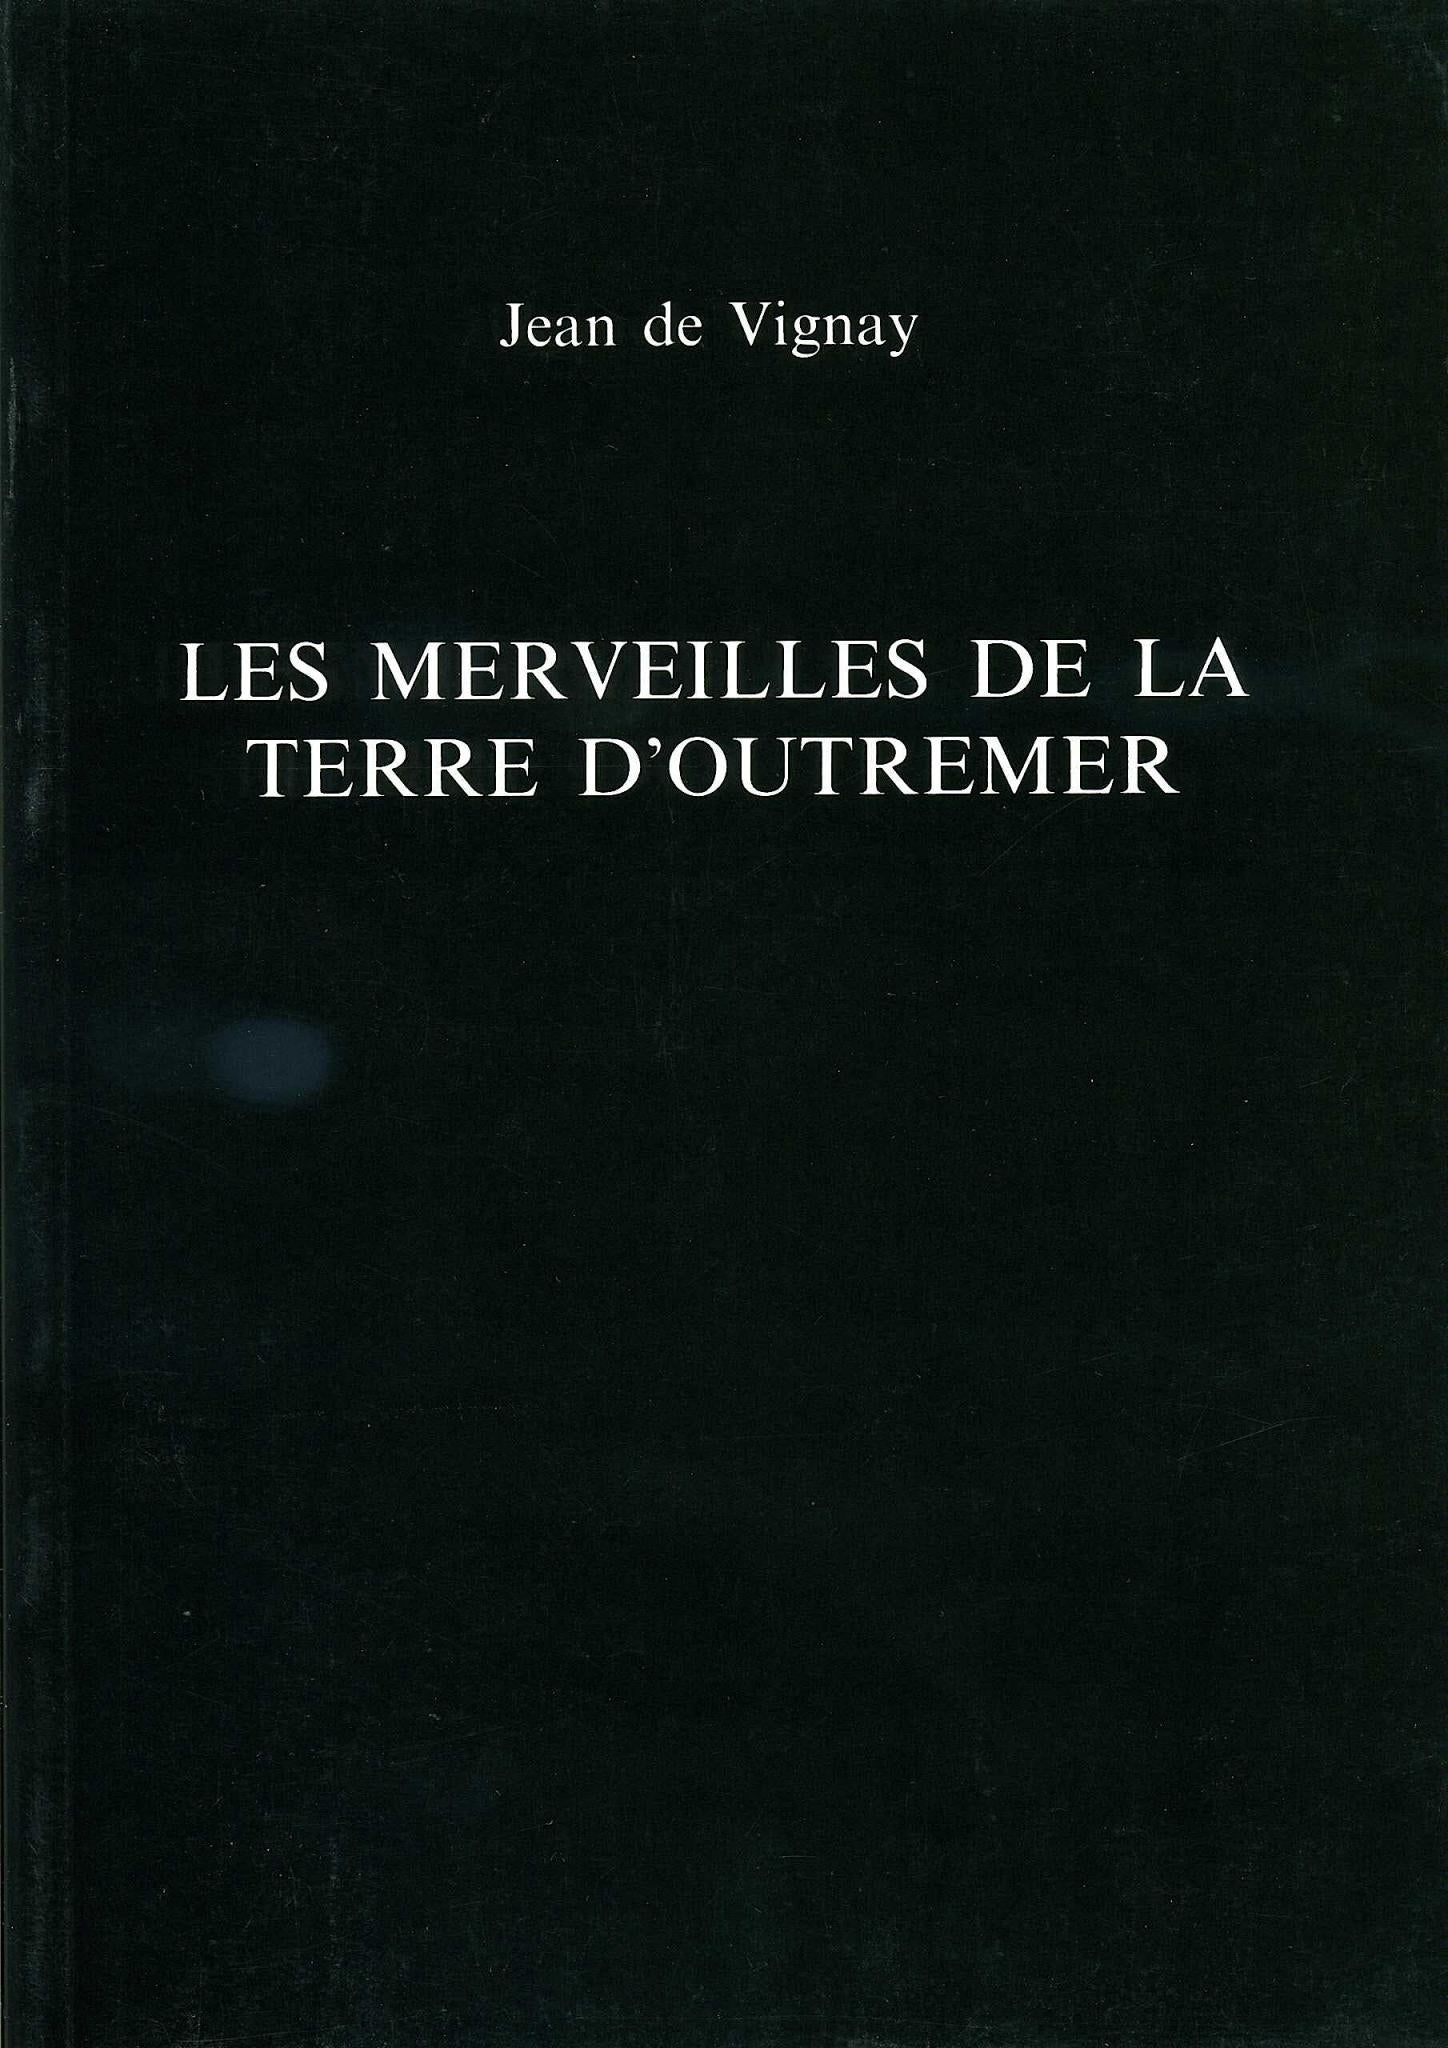 Jean de Vignay